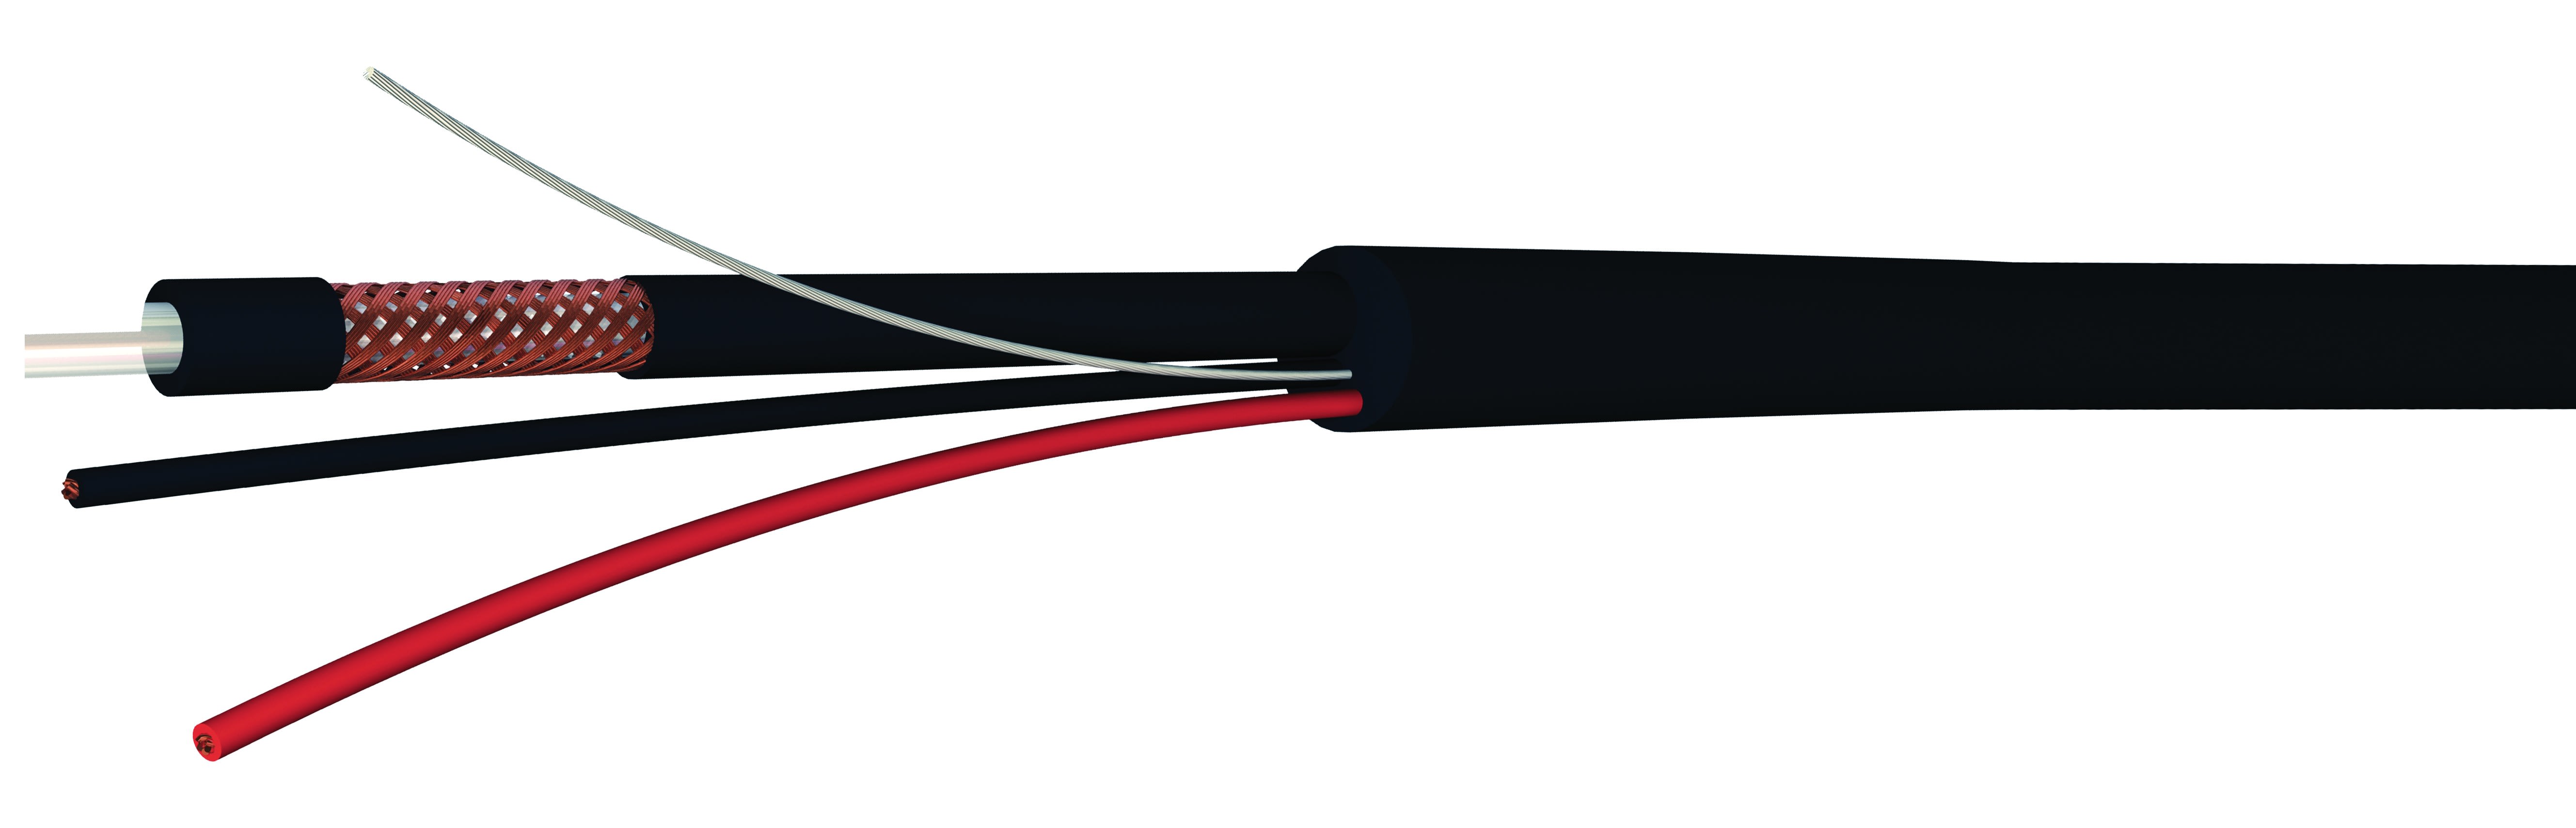 CAE Data - Câble composé d'un câble vidéo analogique et d'un câble d'alimentation